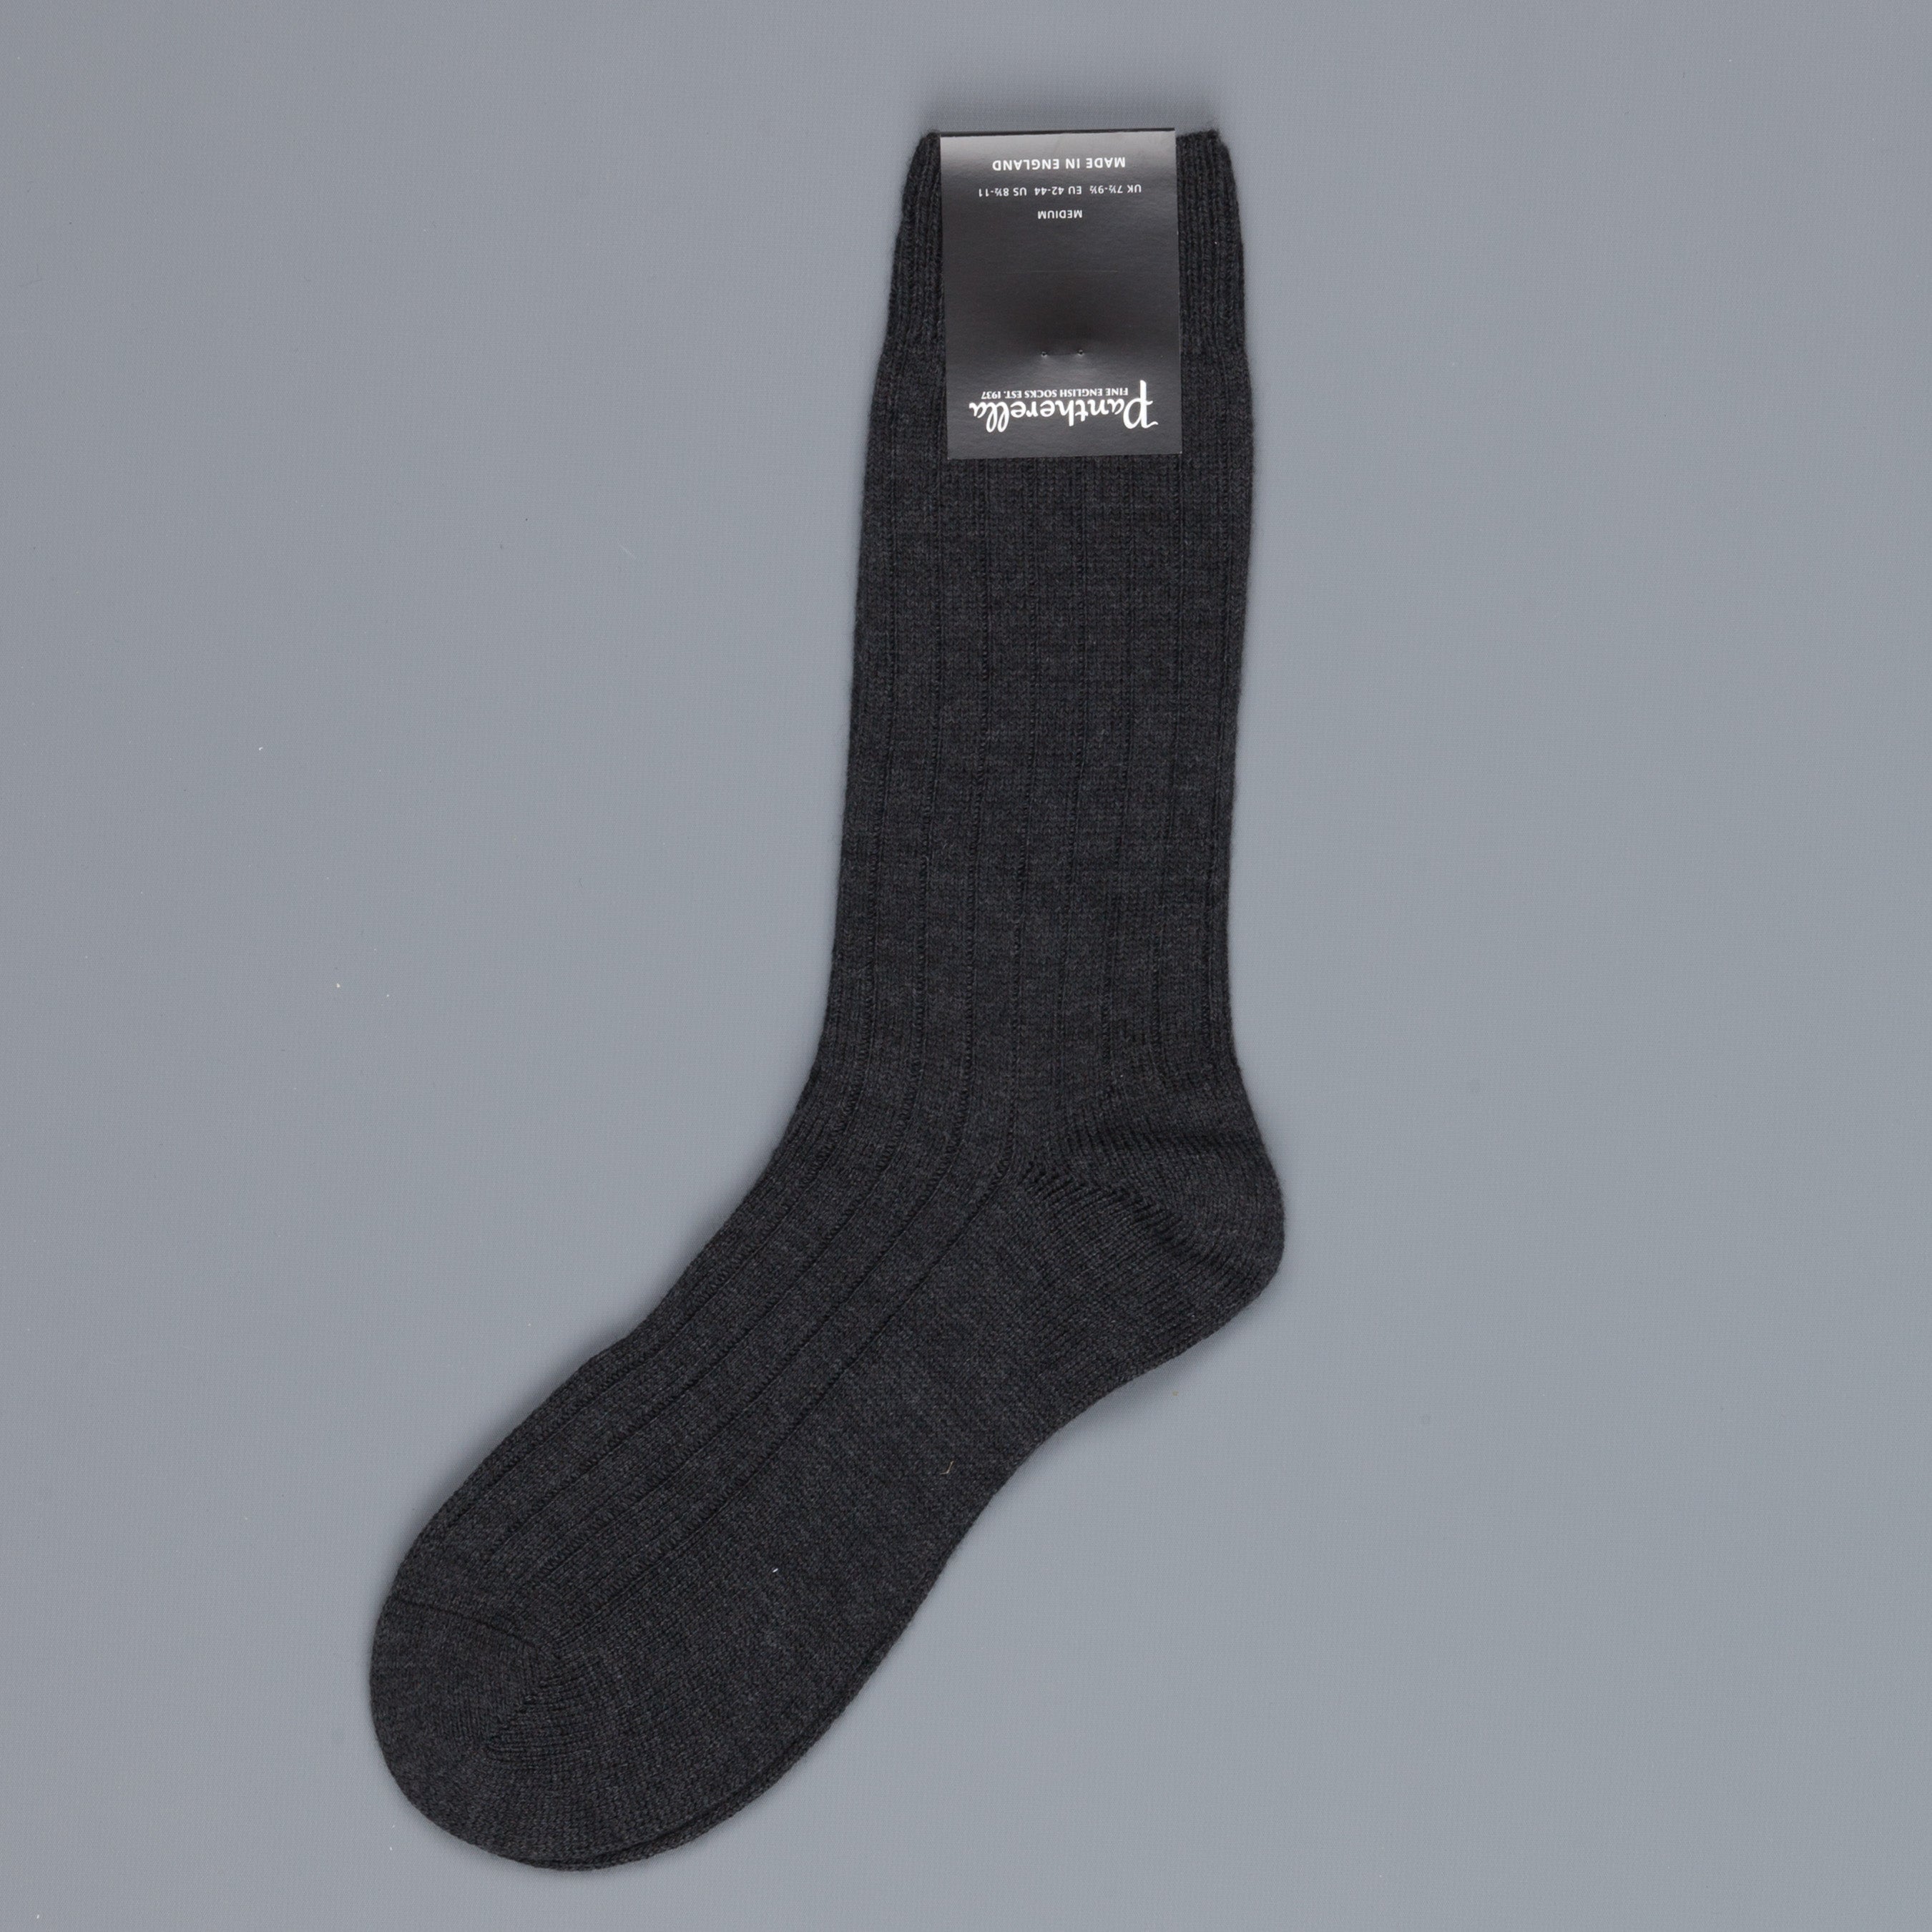 Pantherella Packington Merino wool socks Navy